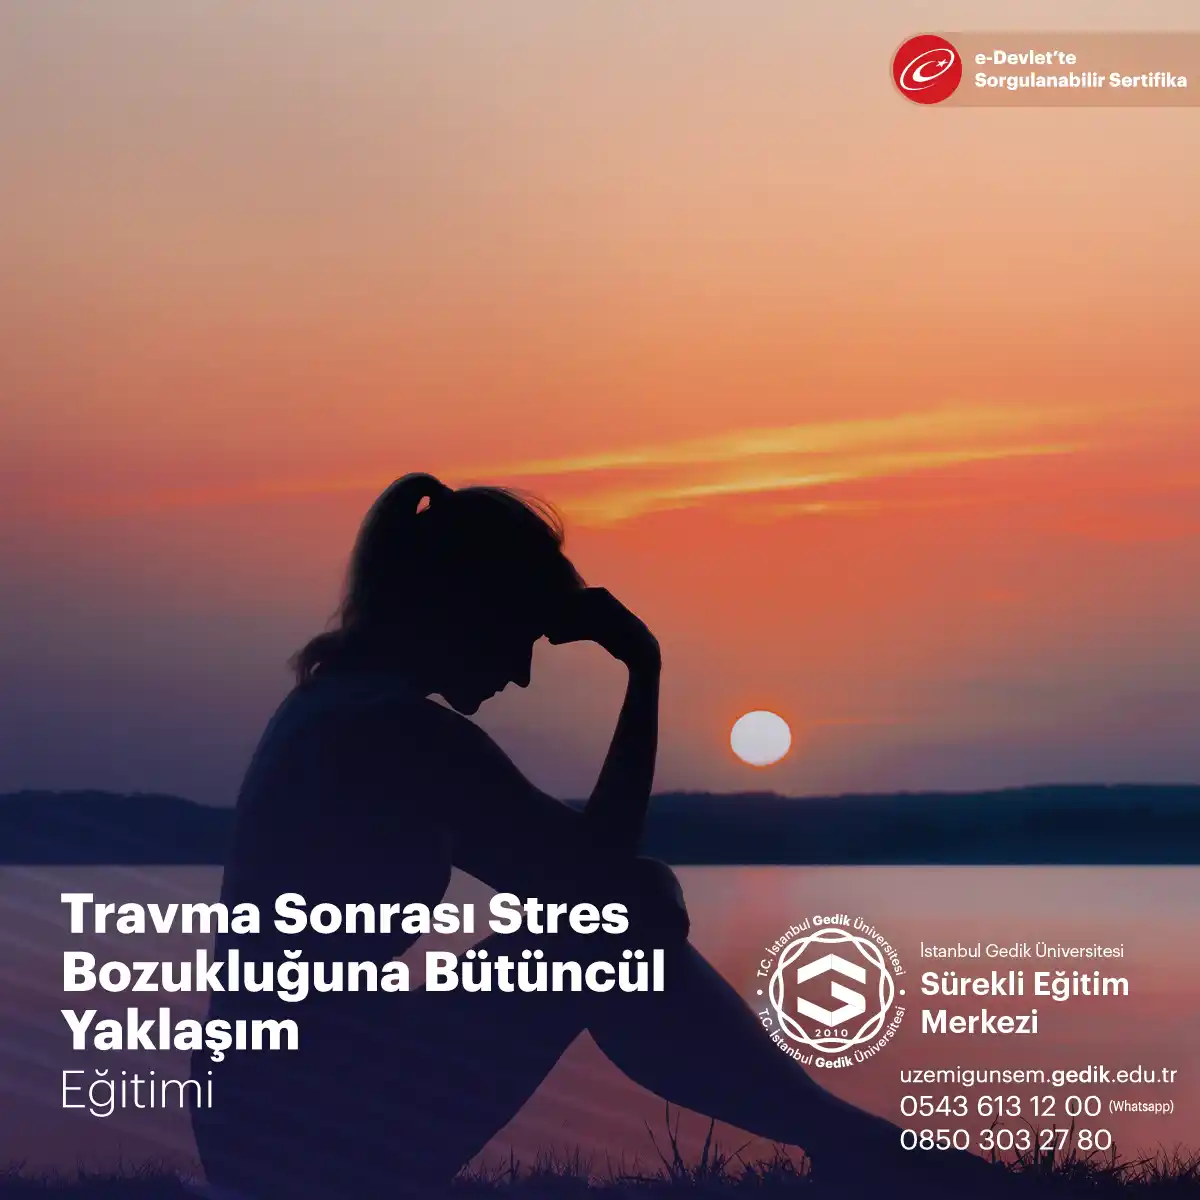 Travma Sonrası Stres Bozukluğu (TSSB), kişinin yoğun bir travmatik olay veya olaylar sonrasında yaşadığı stresle ilgili bir bozukluktur. 